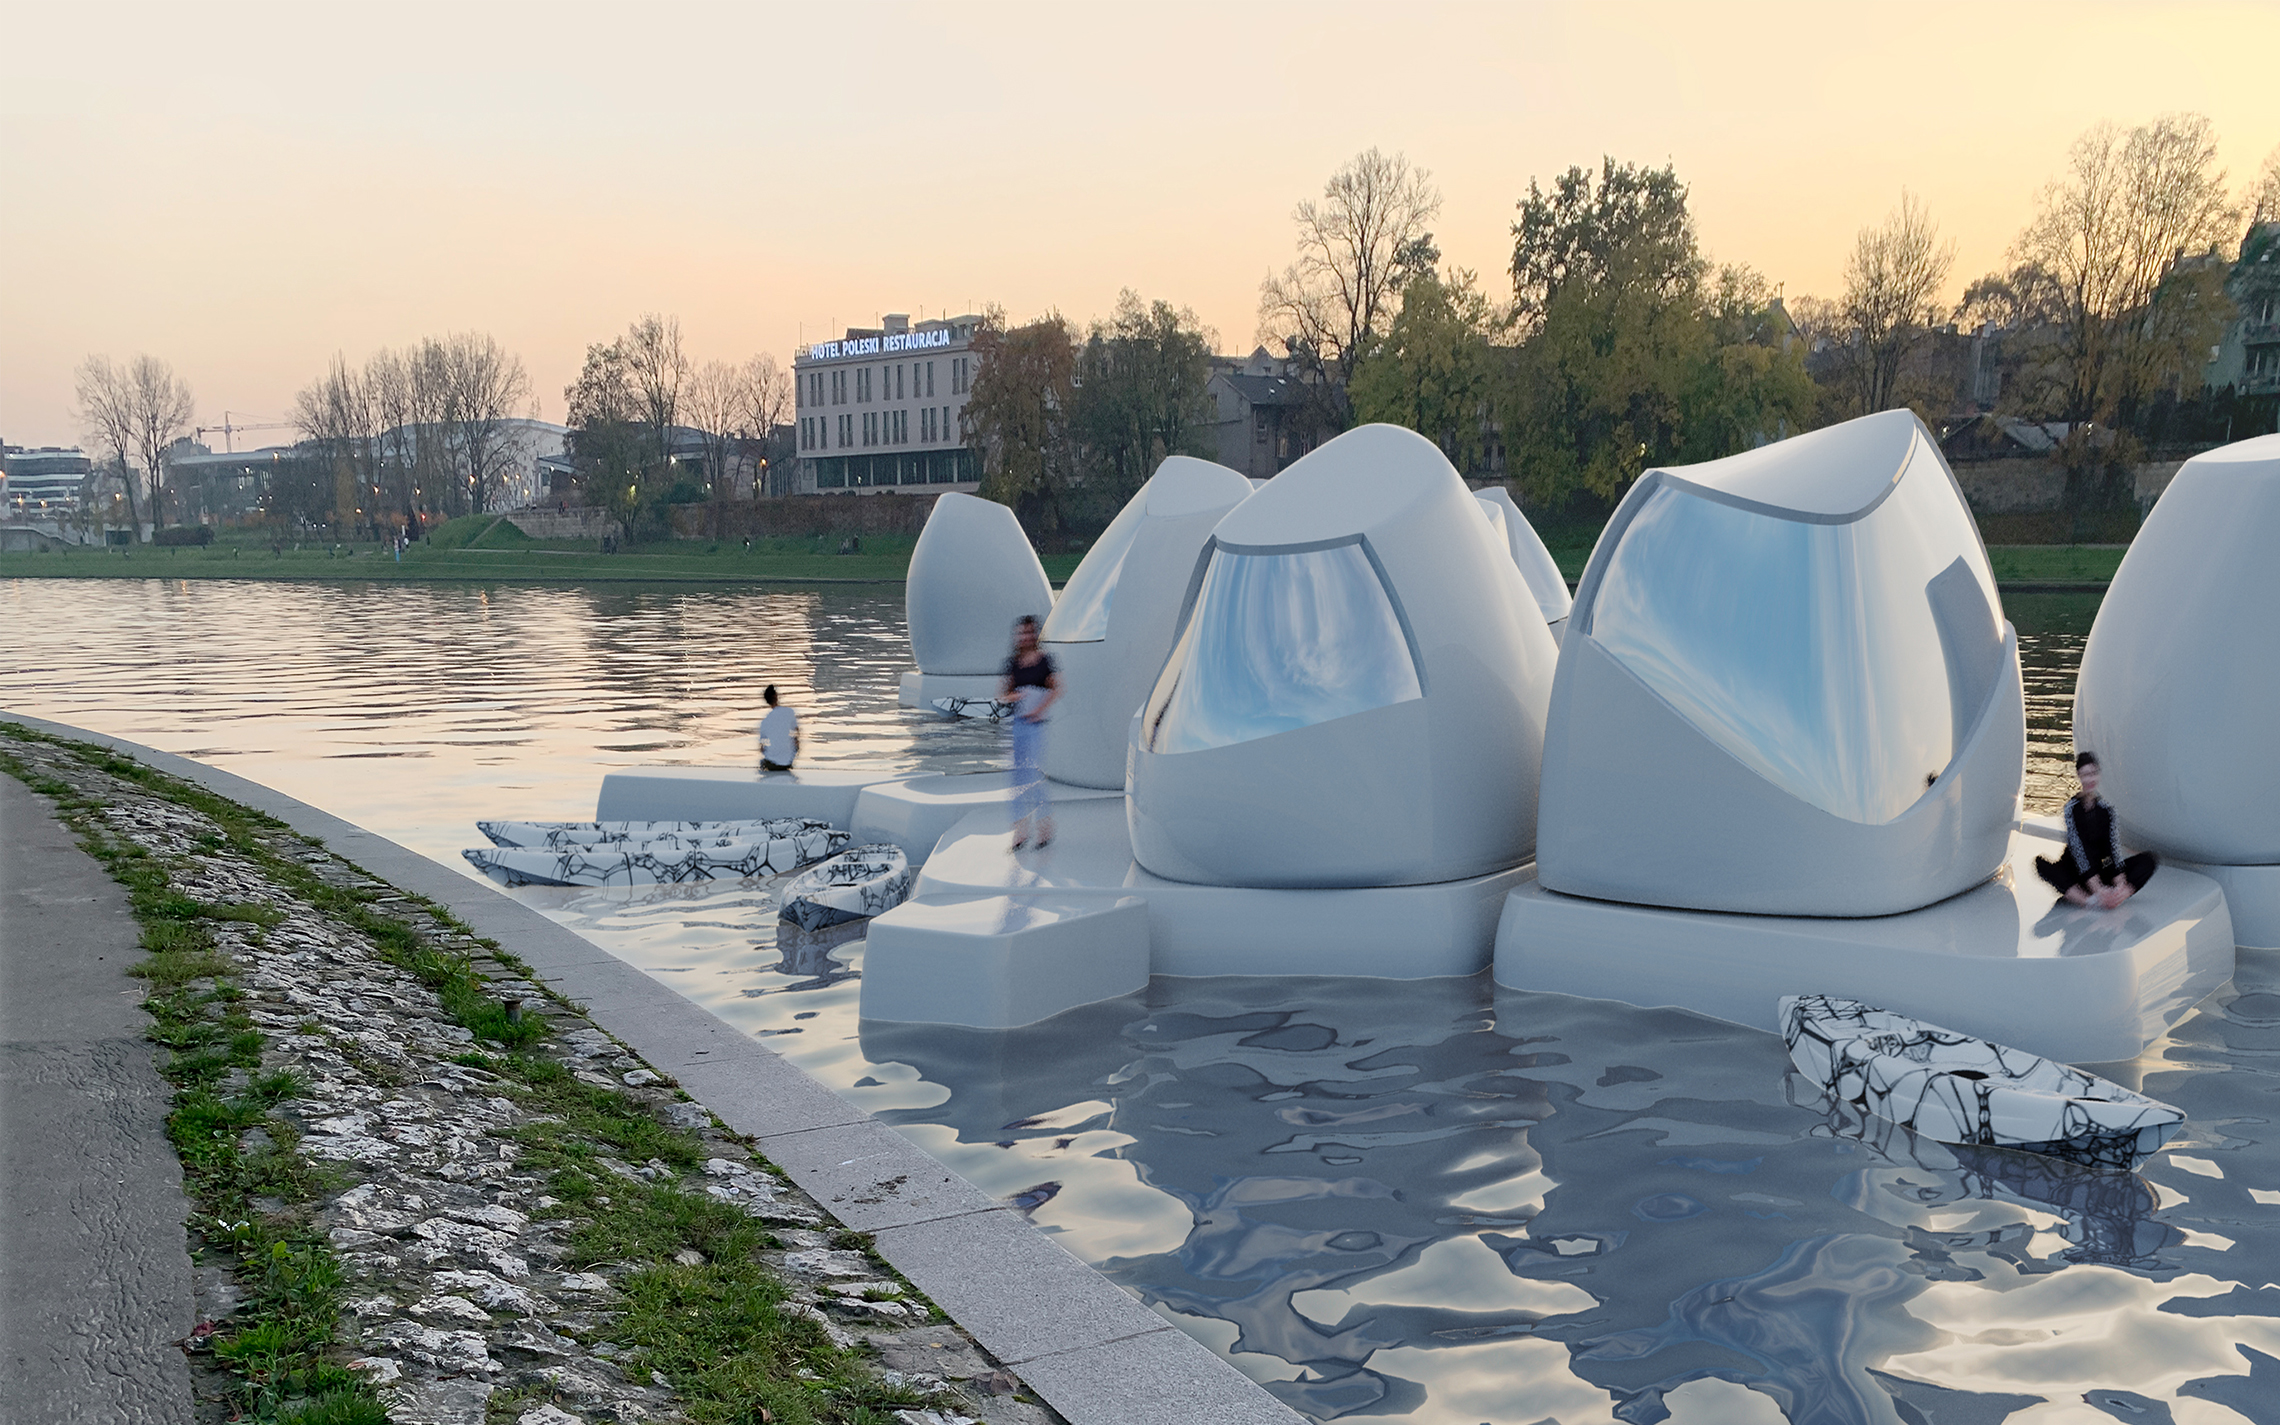 Pływające biura przyszłości na Wiśle – projekt absolwentki krakowskiej ASP wzbudza wiele emocji